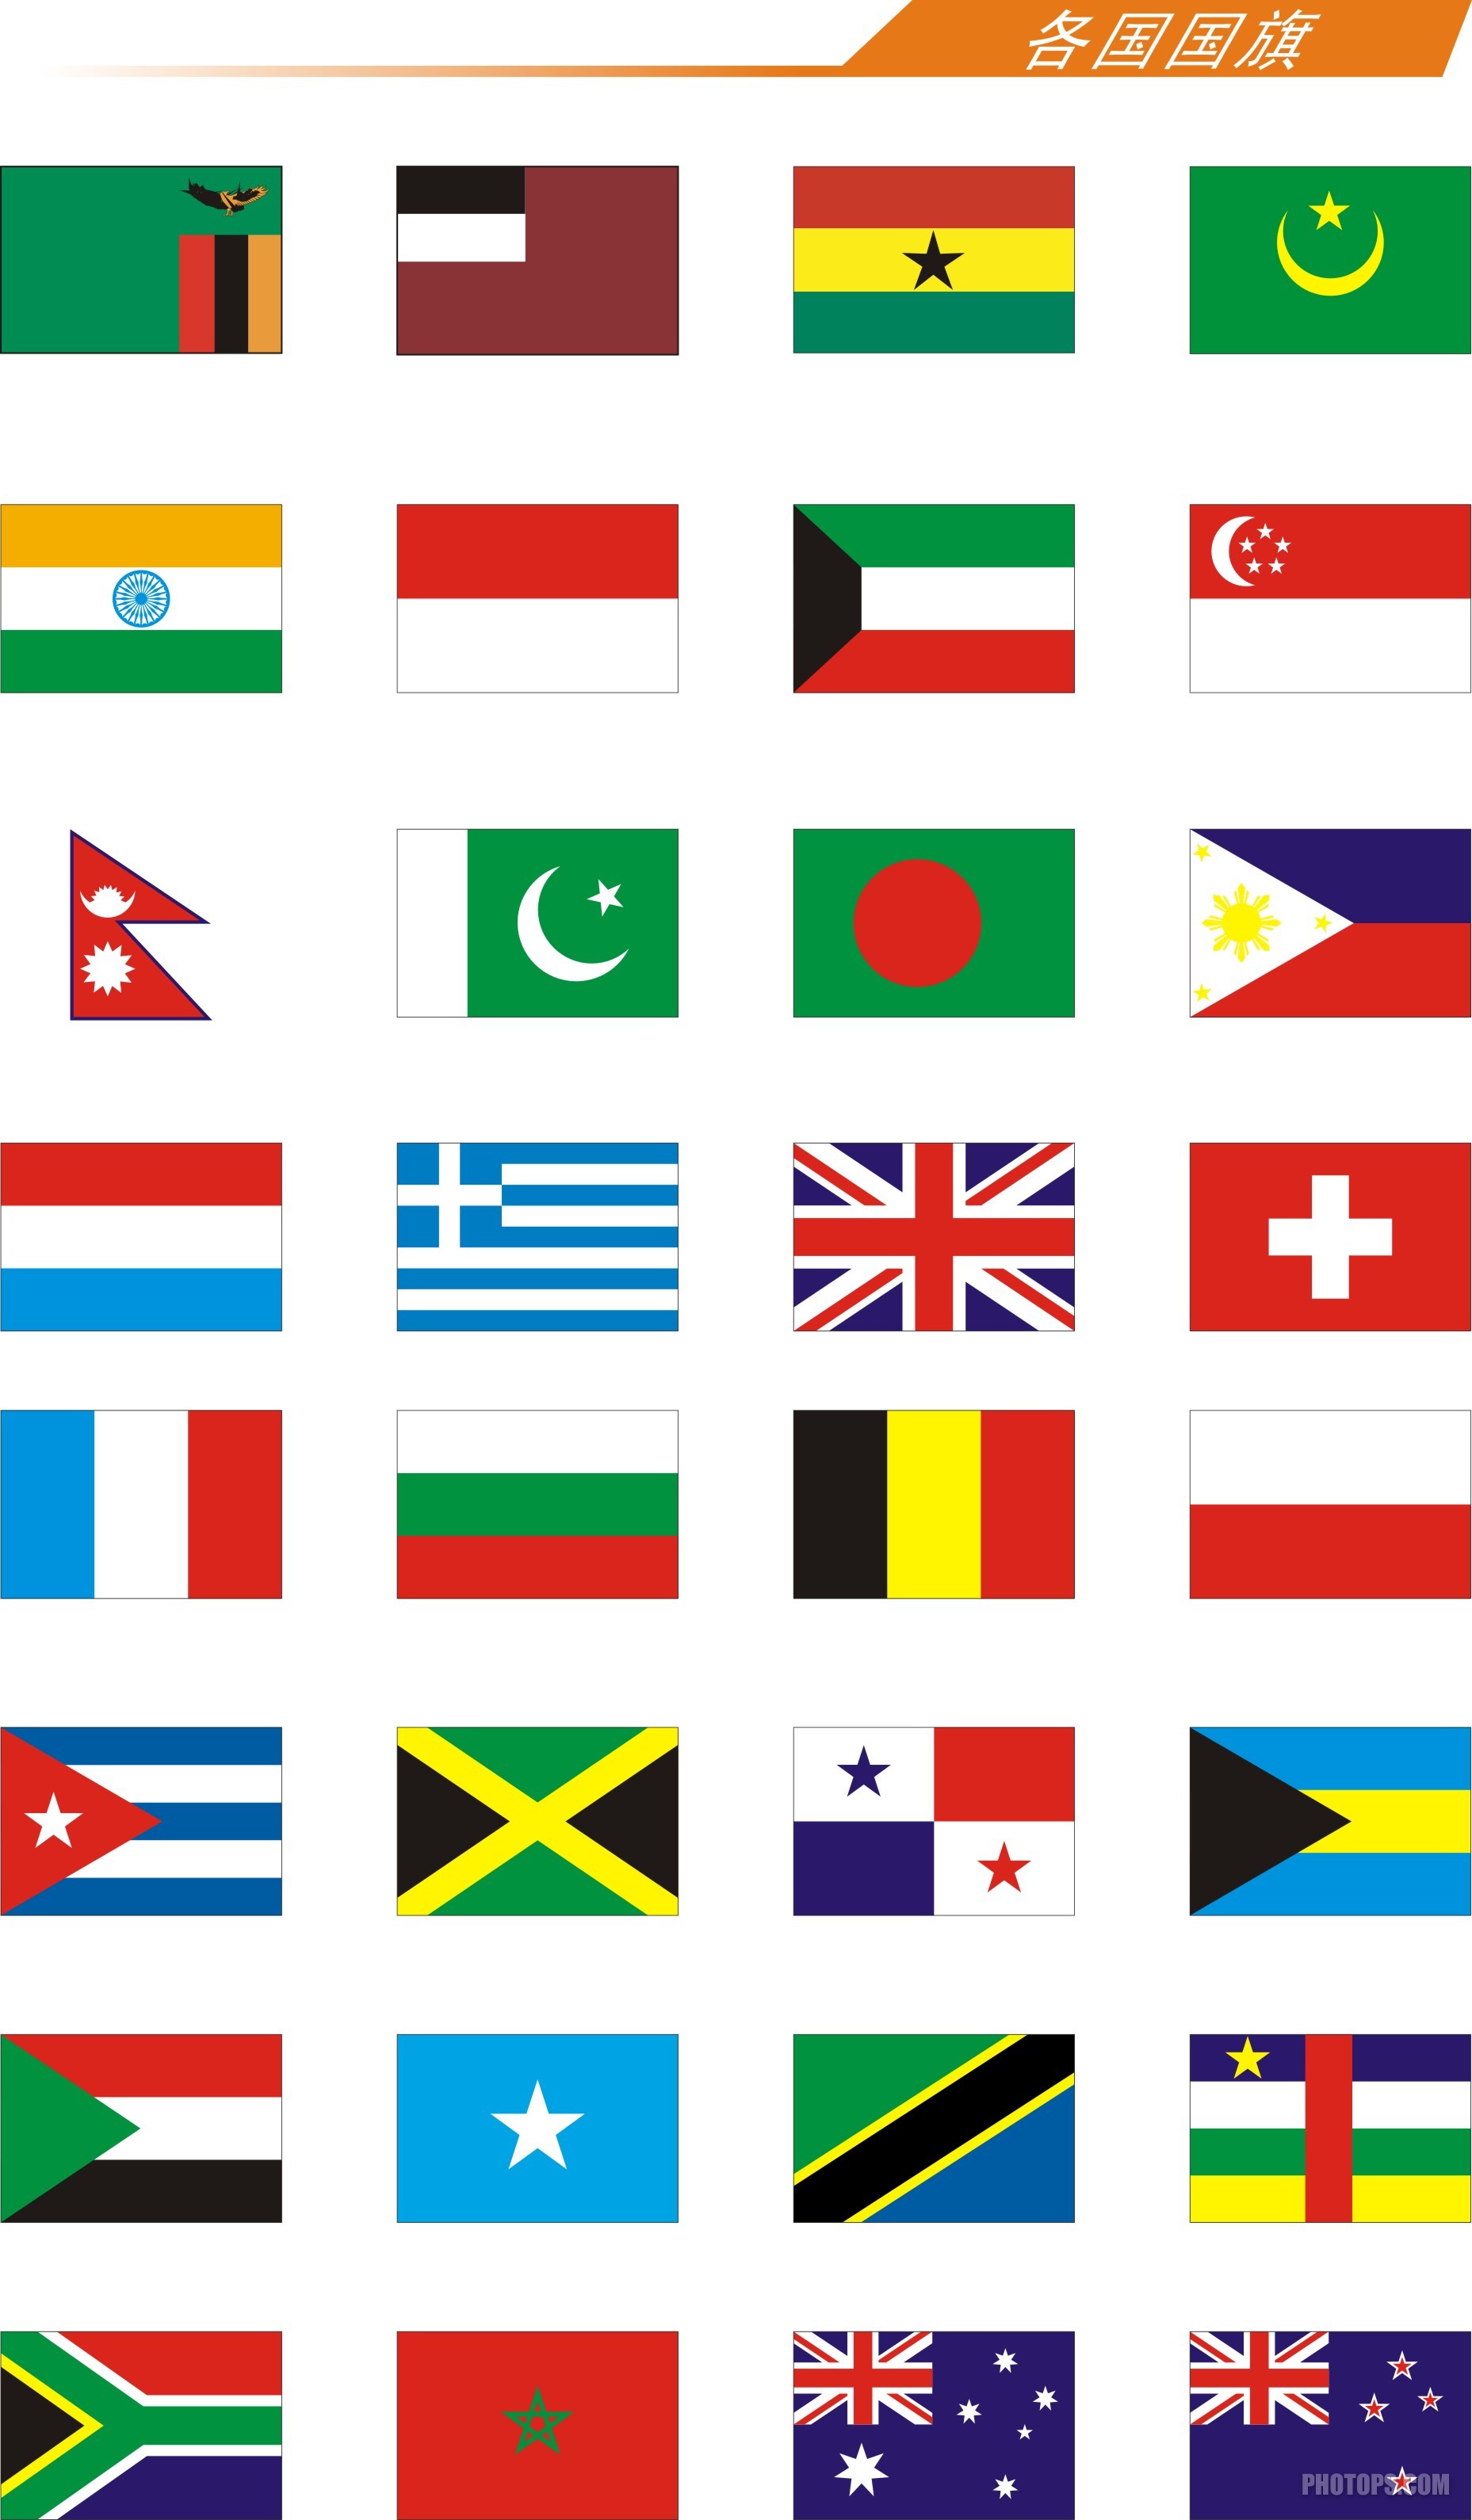 世界各国国旗图片 世界各国国旗图片大全及名称 | 犀牛图片网